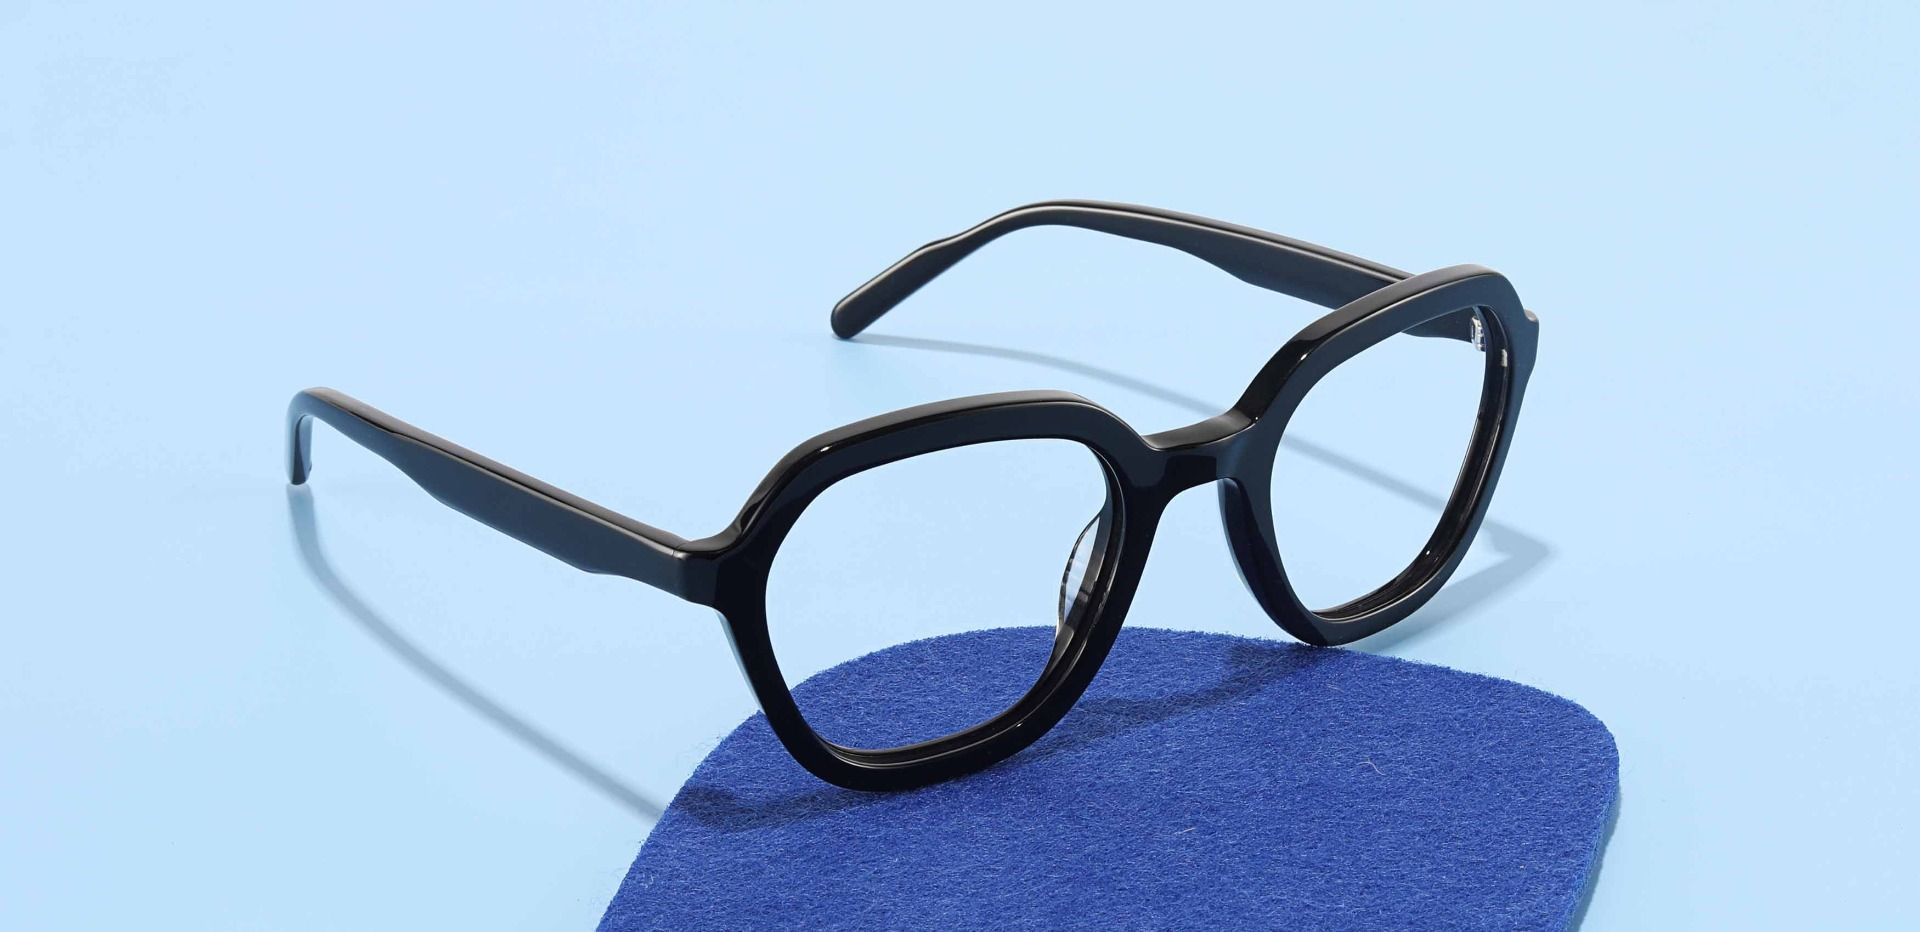 Burke Geometric Eyeglasses Frame - Black